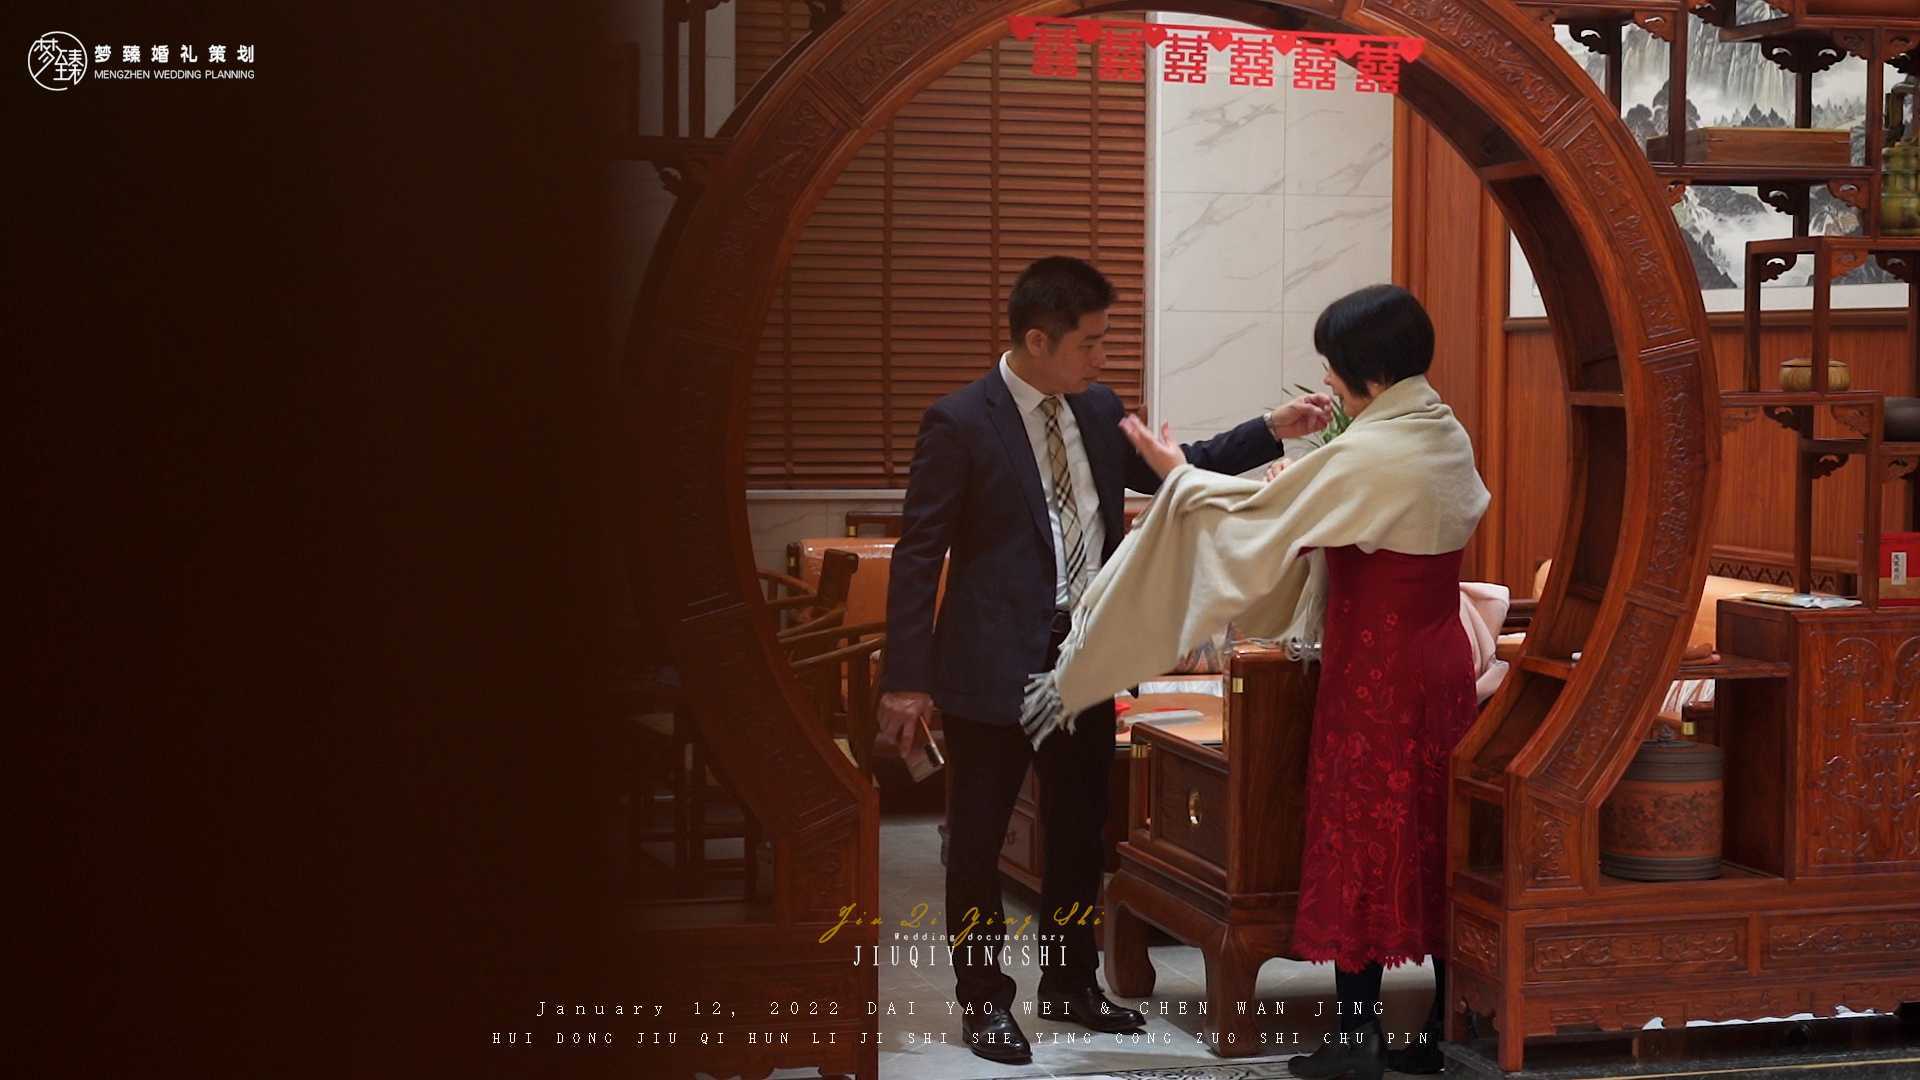 Jiuqi Film玖柒影视January 12,2022 D&C︱婚礼纪实花絮